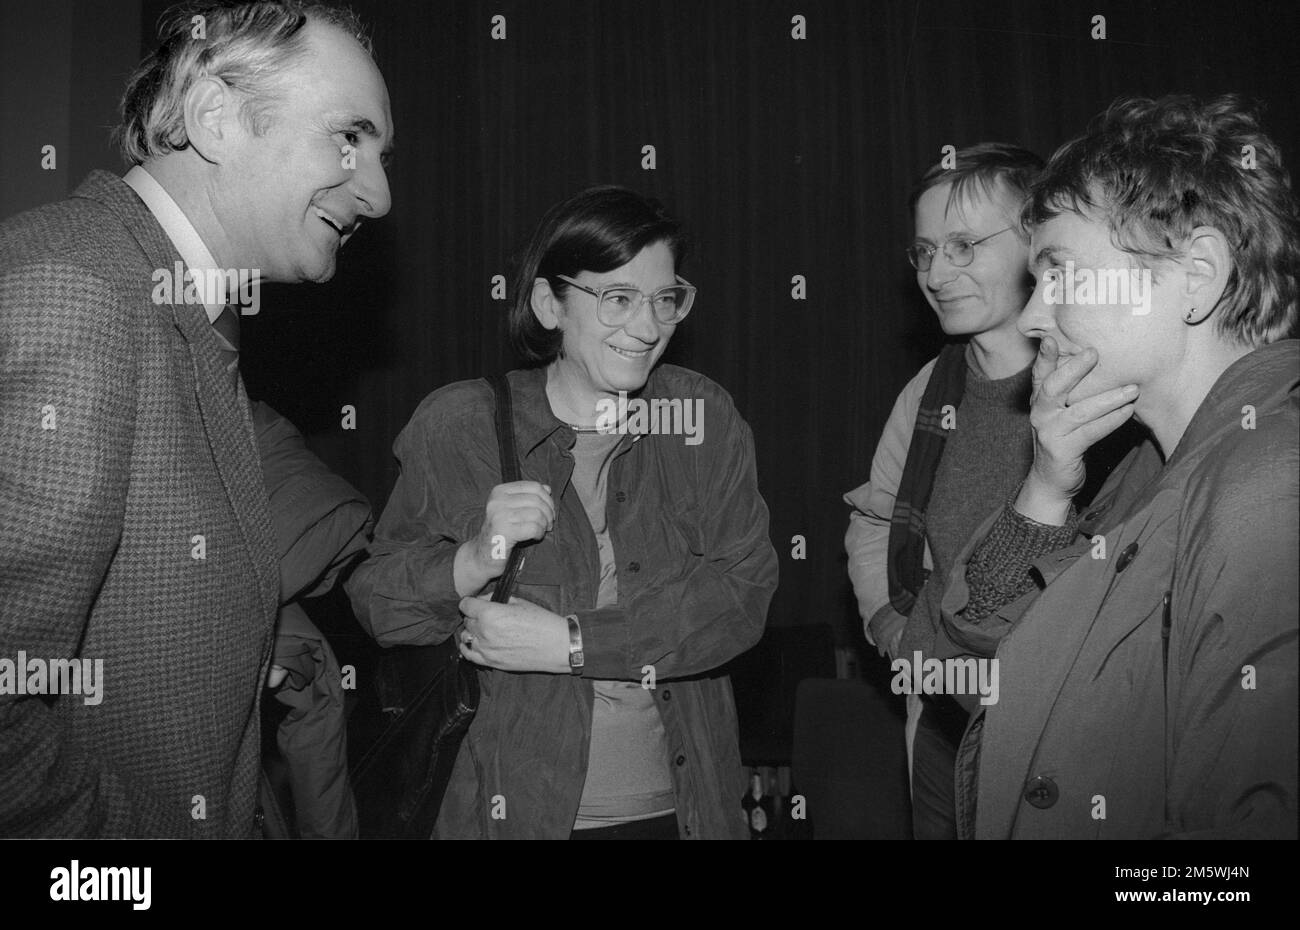 Alemania, Berlín, 14 de marzo de 1991 (de izquierda a derecha) Heinrich Fink, Rector de la Universidad Humboldt de Berlín, Christa Wolf, Klaus Wolfram Foto de stock